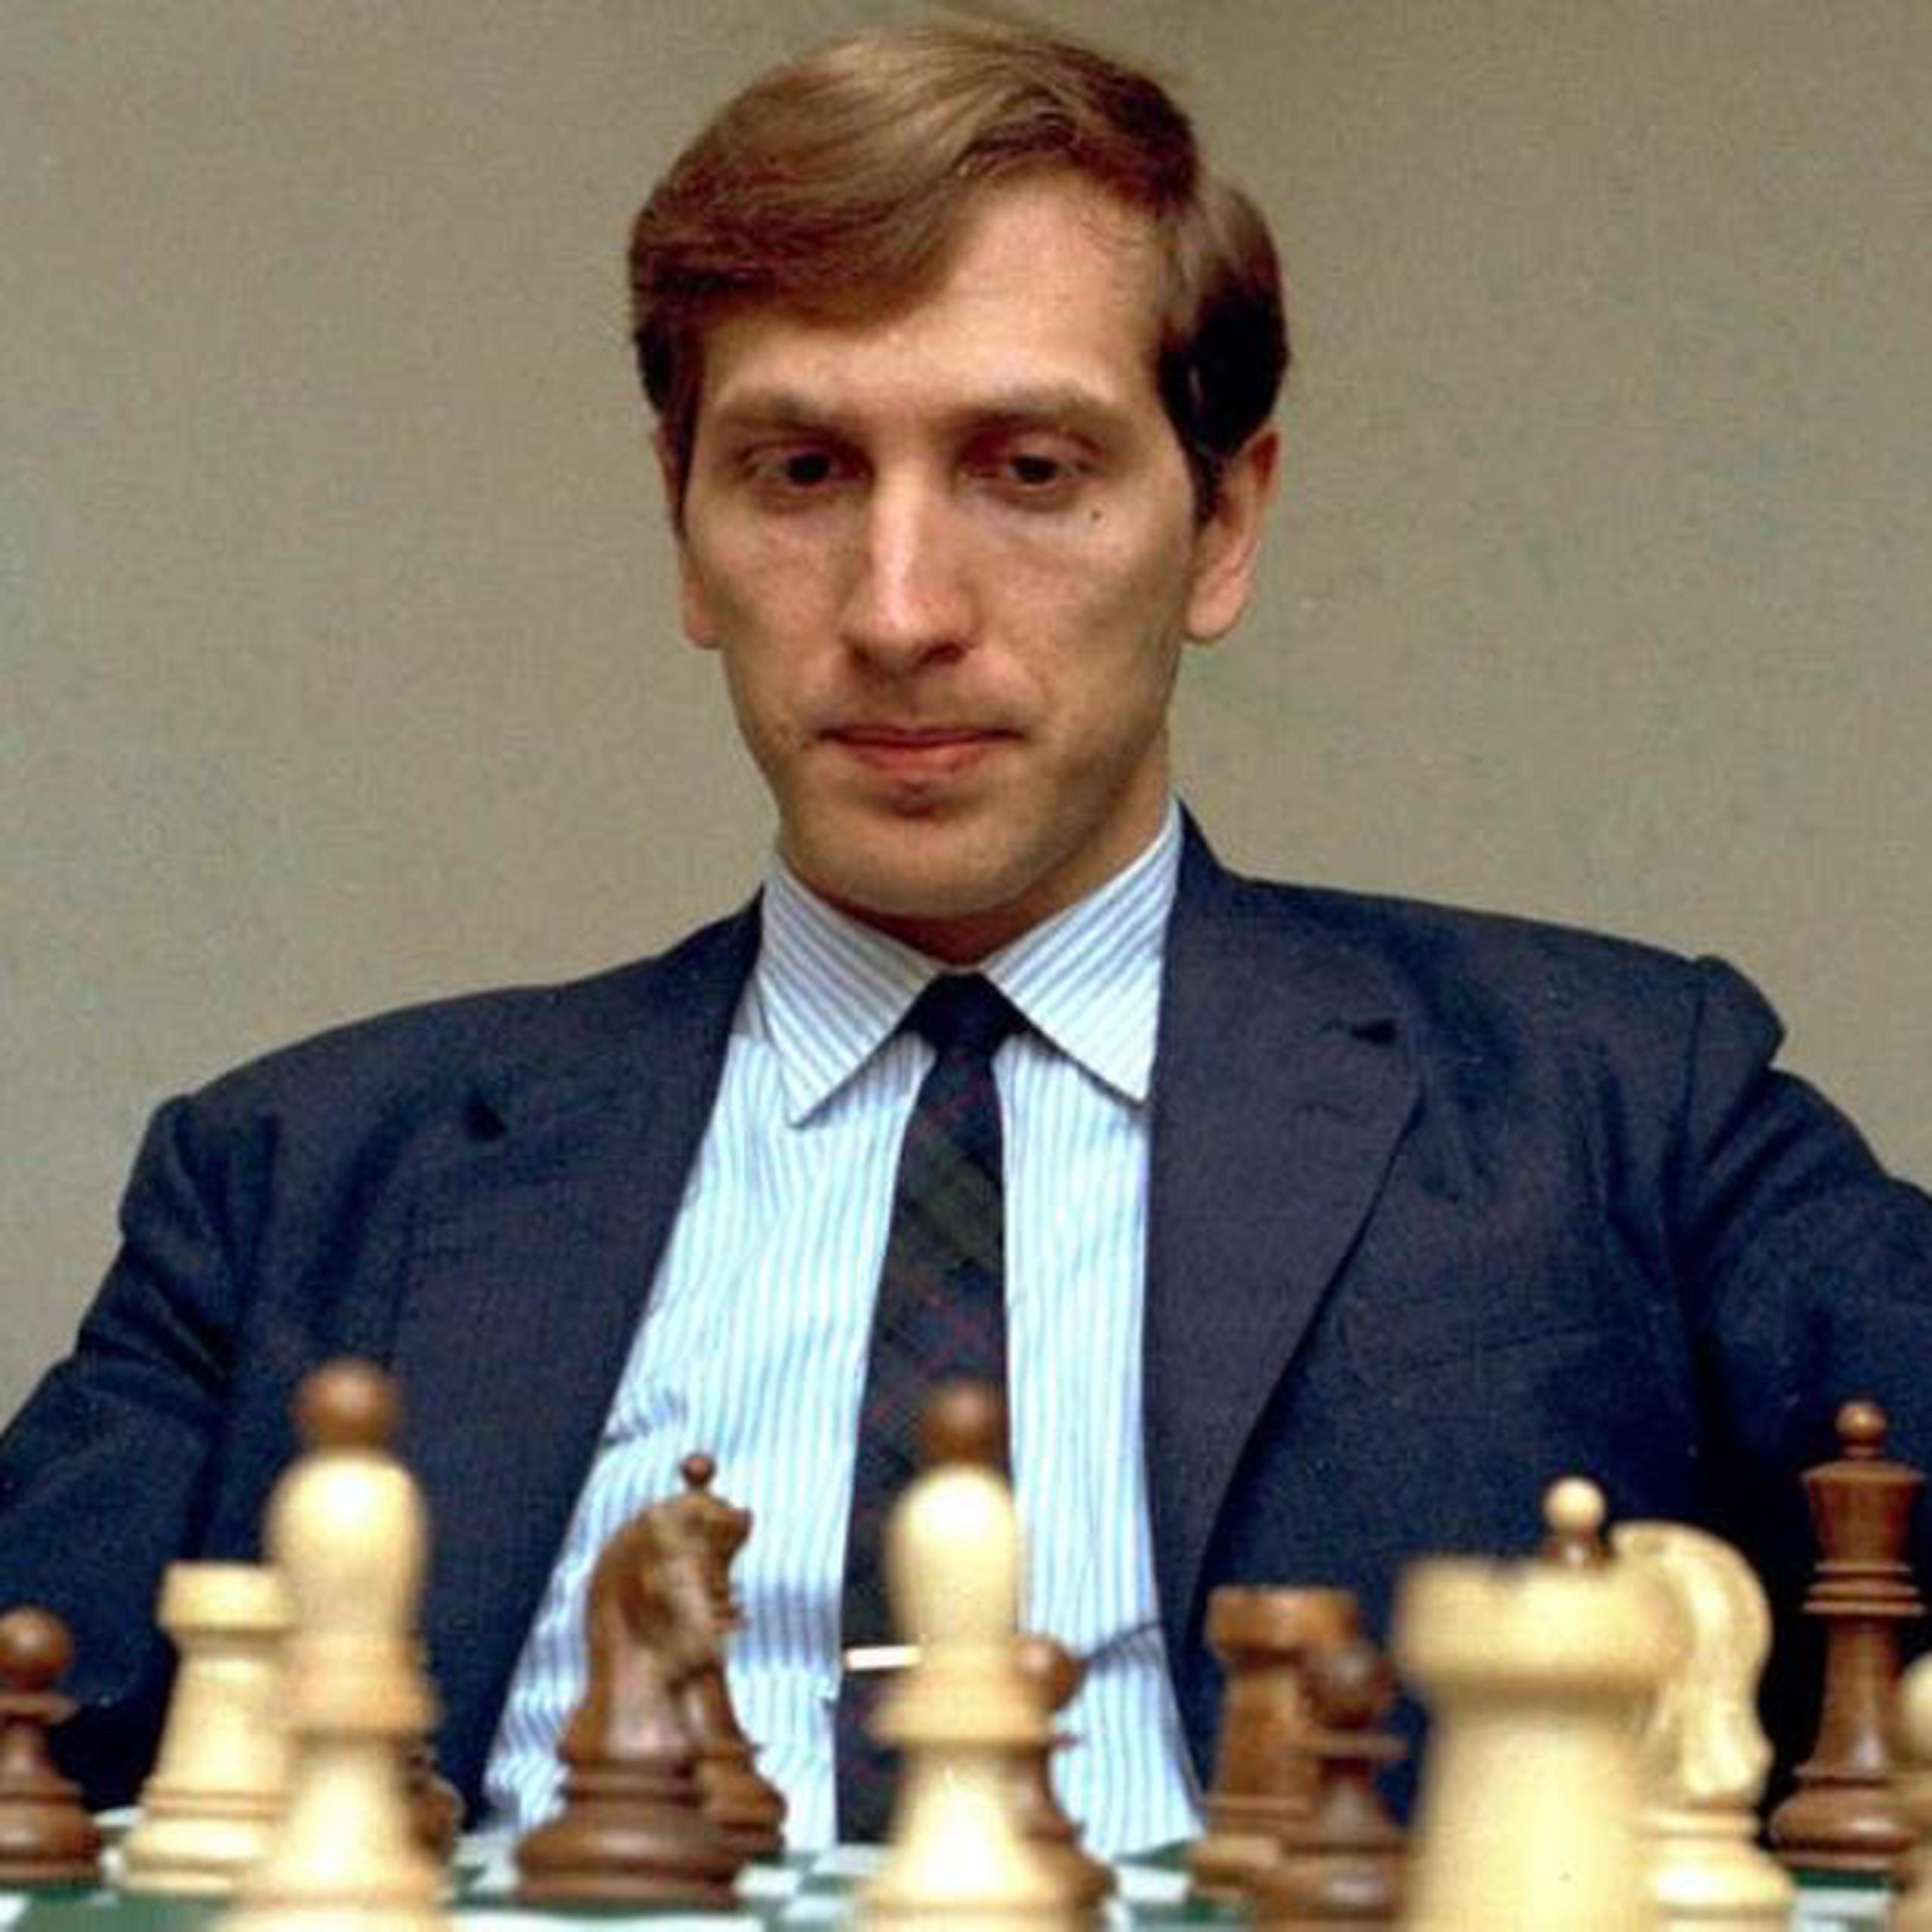 Fischer se coronó campeón mundial el 1 de septiembre de 1972,  el único estadounidense en conquistar ese título. (La Nacion/GDA)